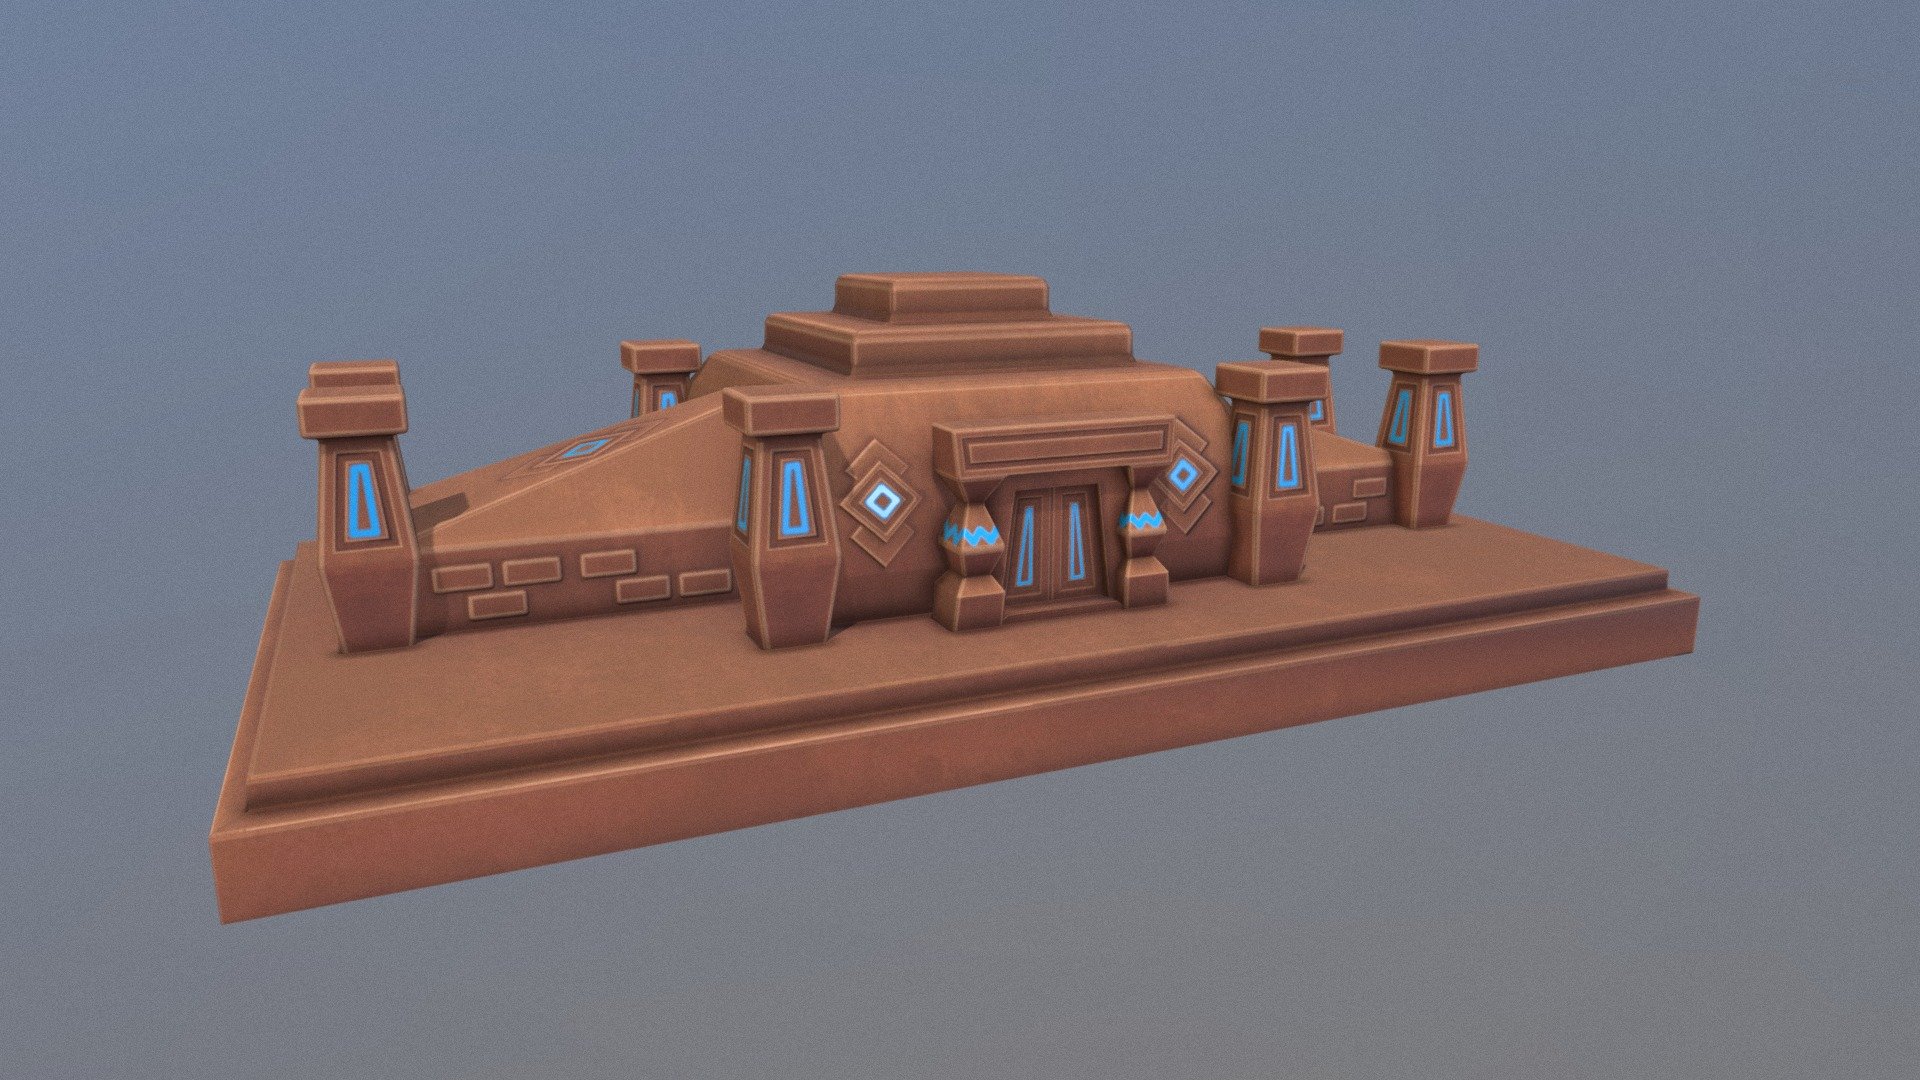 Desert Temple